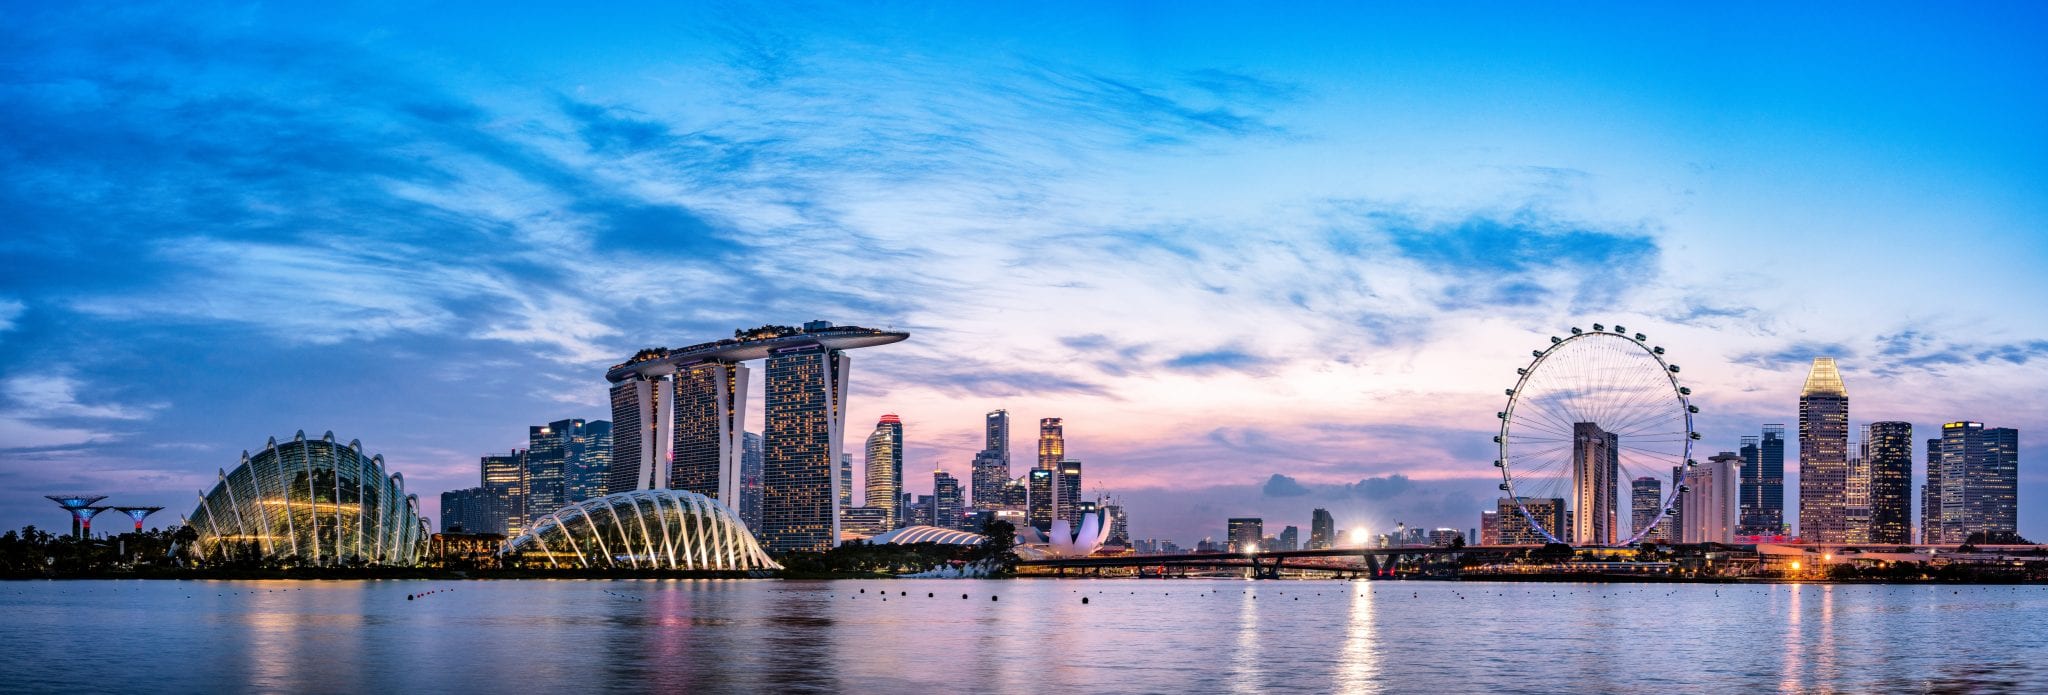 360 Panorama view of Singapore